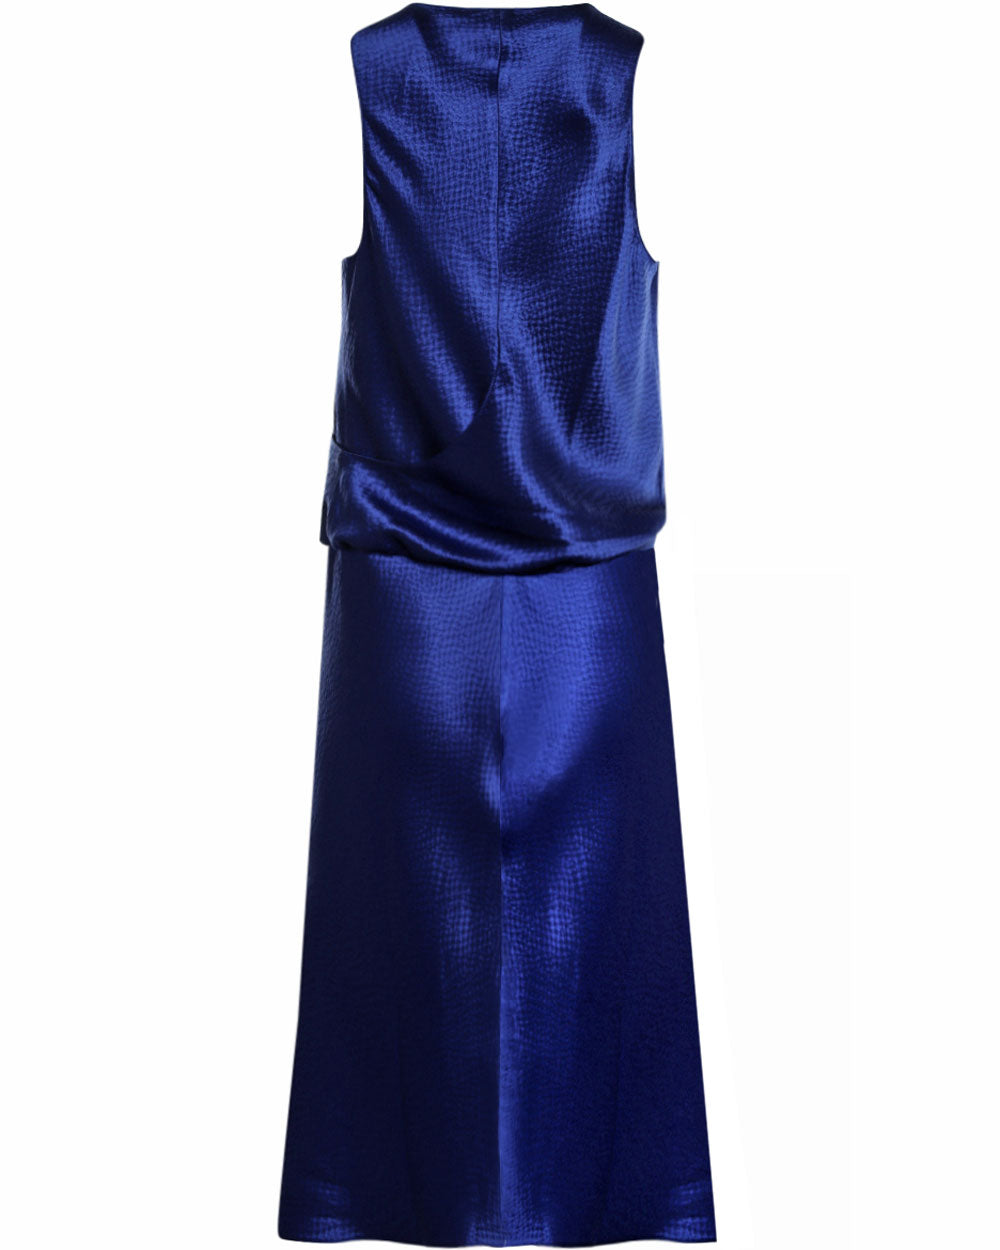 Soft Blue Blend Dress